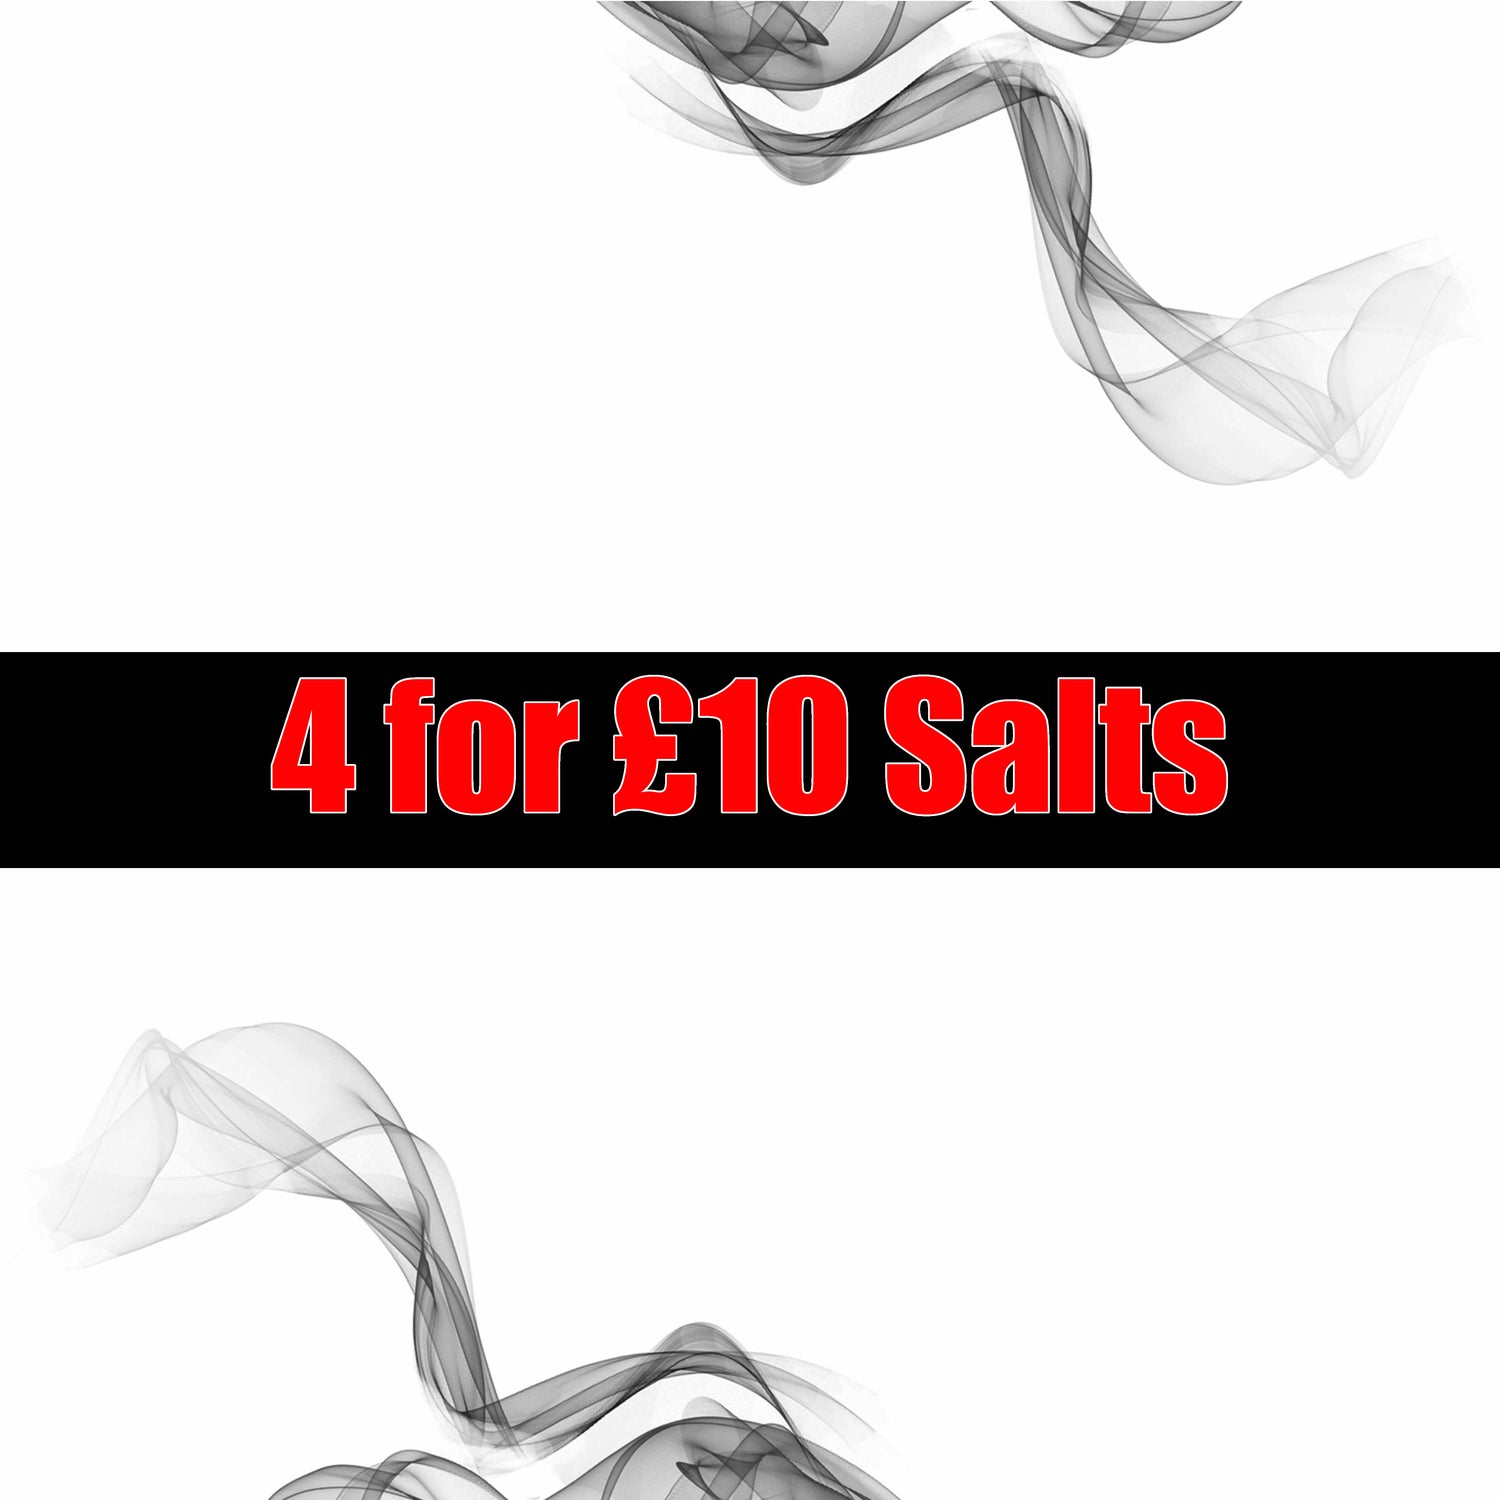 4 for £10 Nic Salts